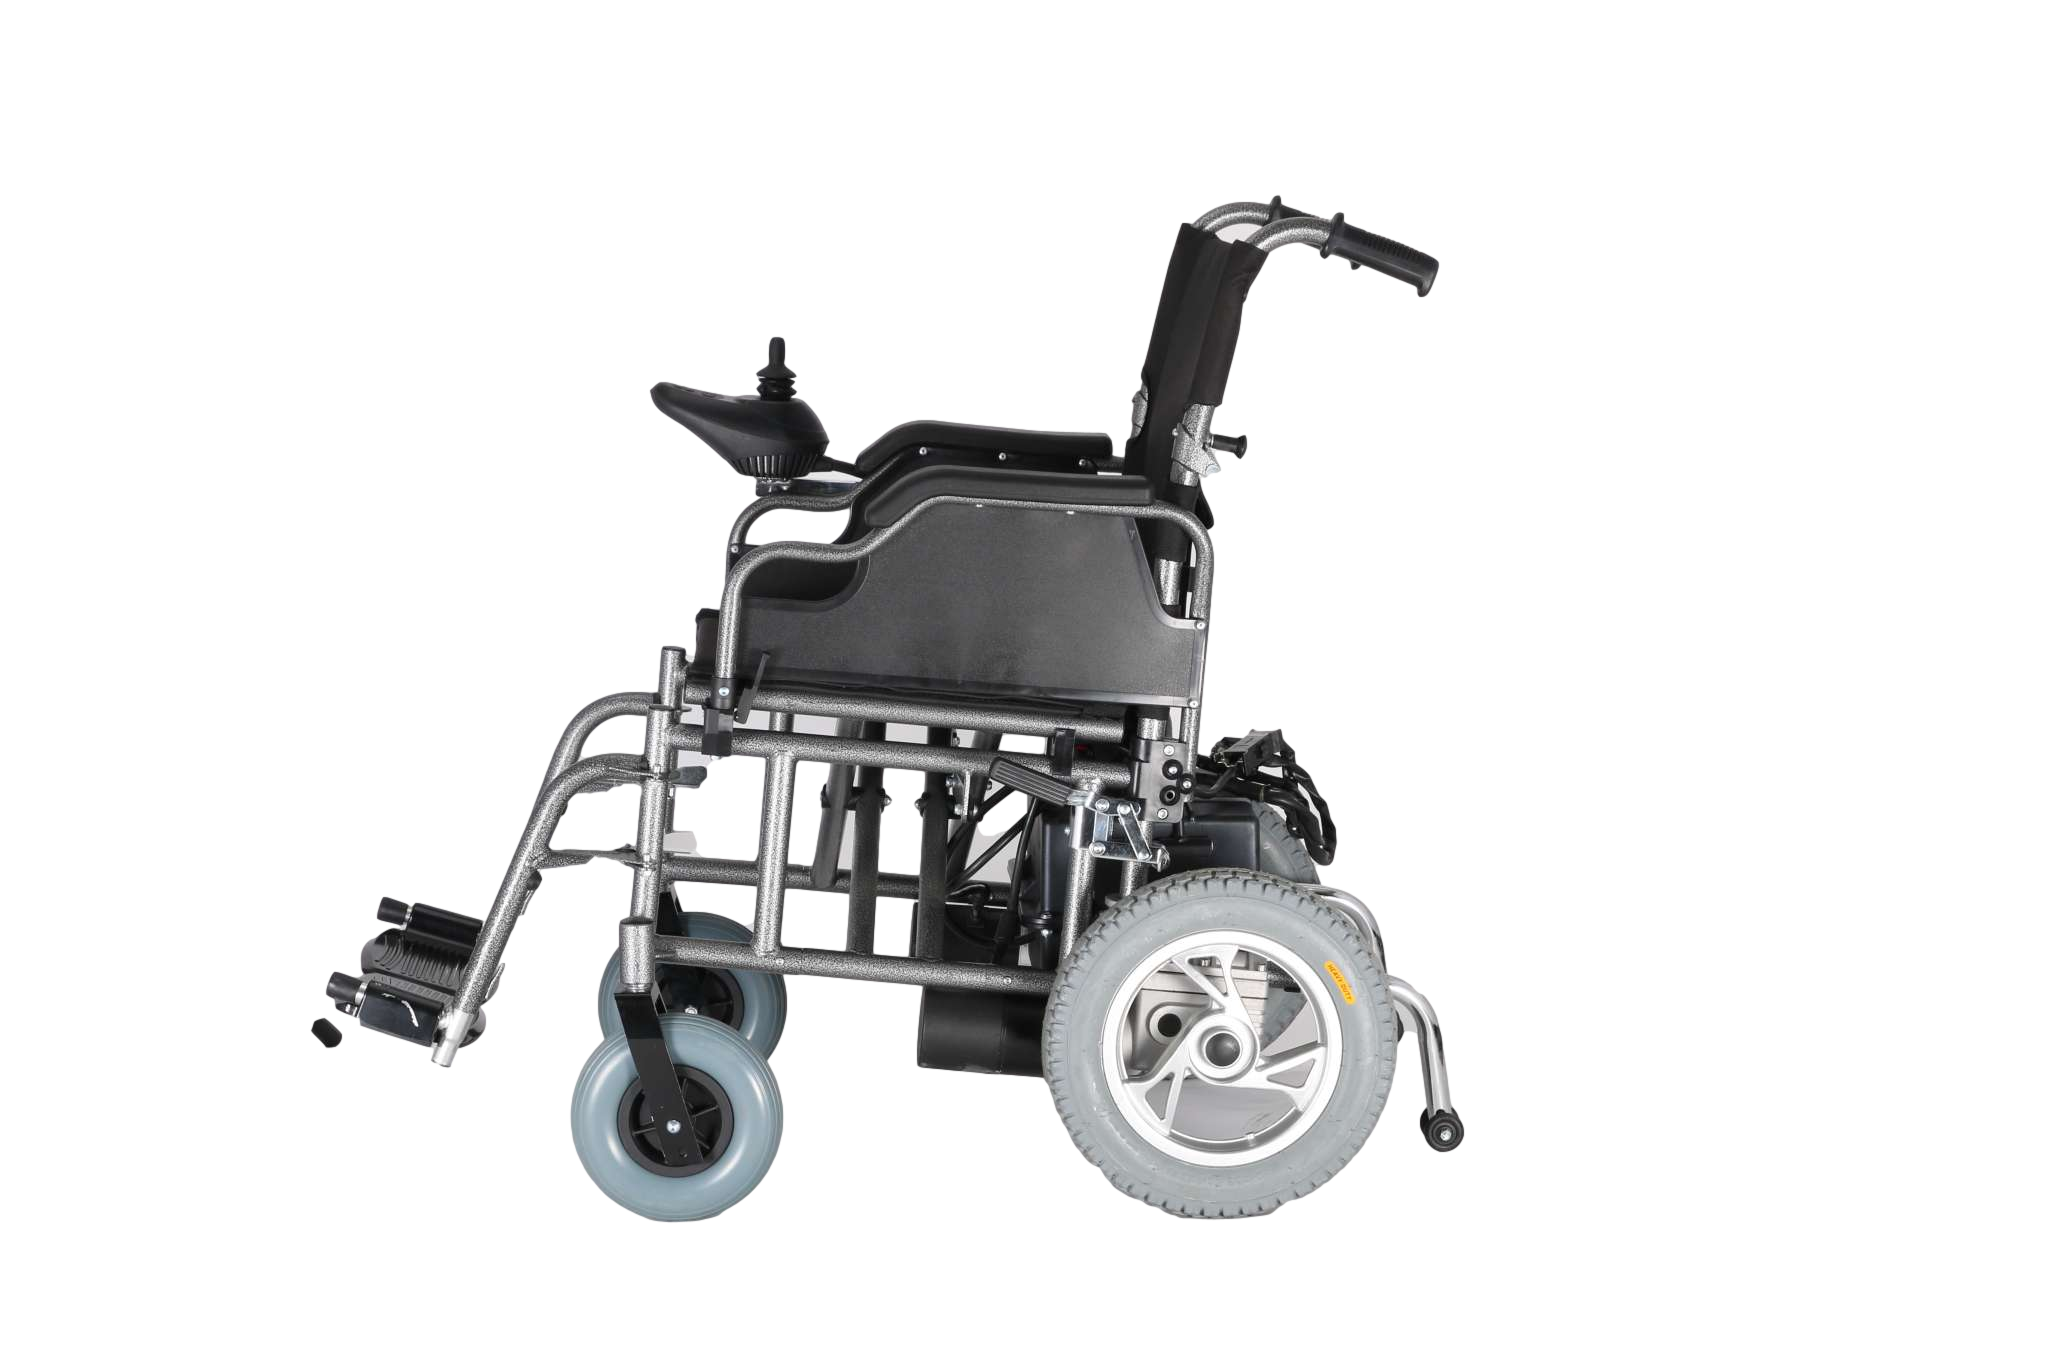 купить Стальная электрическая инвалидная коляска повышенной проходимости,Стальная электрическая инвалидная коляска повышенной проходимости цена,Стальная электрическая инвалидная коляска повышенной проходимости бренды,Стальная электрическая инвалидная коляска повышенной проходимости производитель;Стальная электрическая инвалидная коляска повышенной проходимости Цитаты;Стальная электрическая инвалидная коляска повышенной проходимости компания